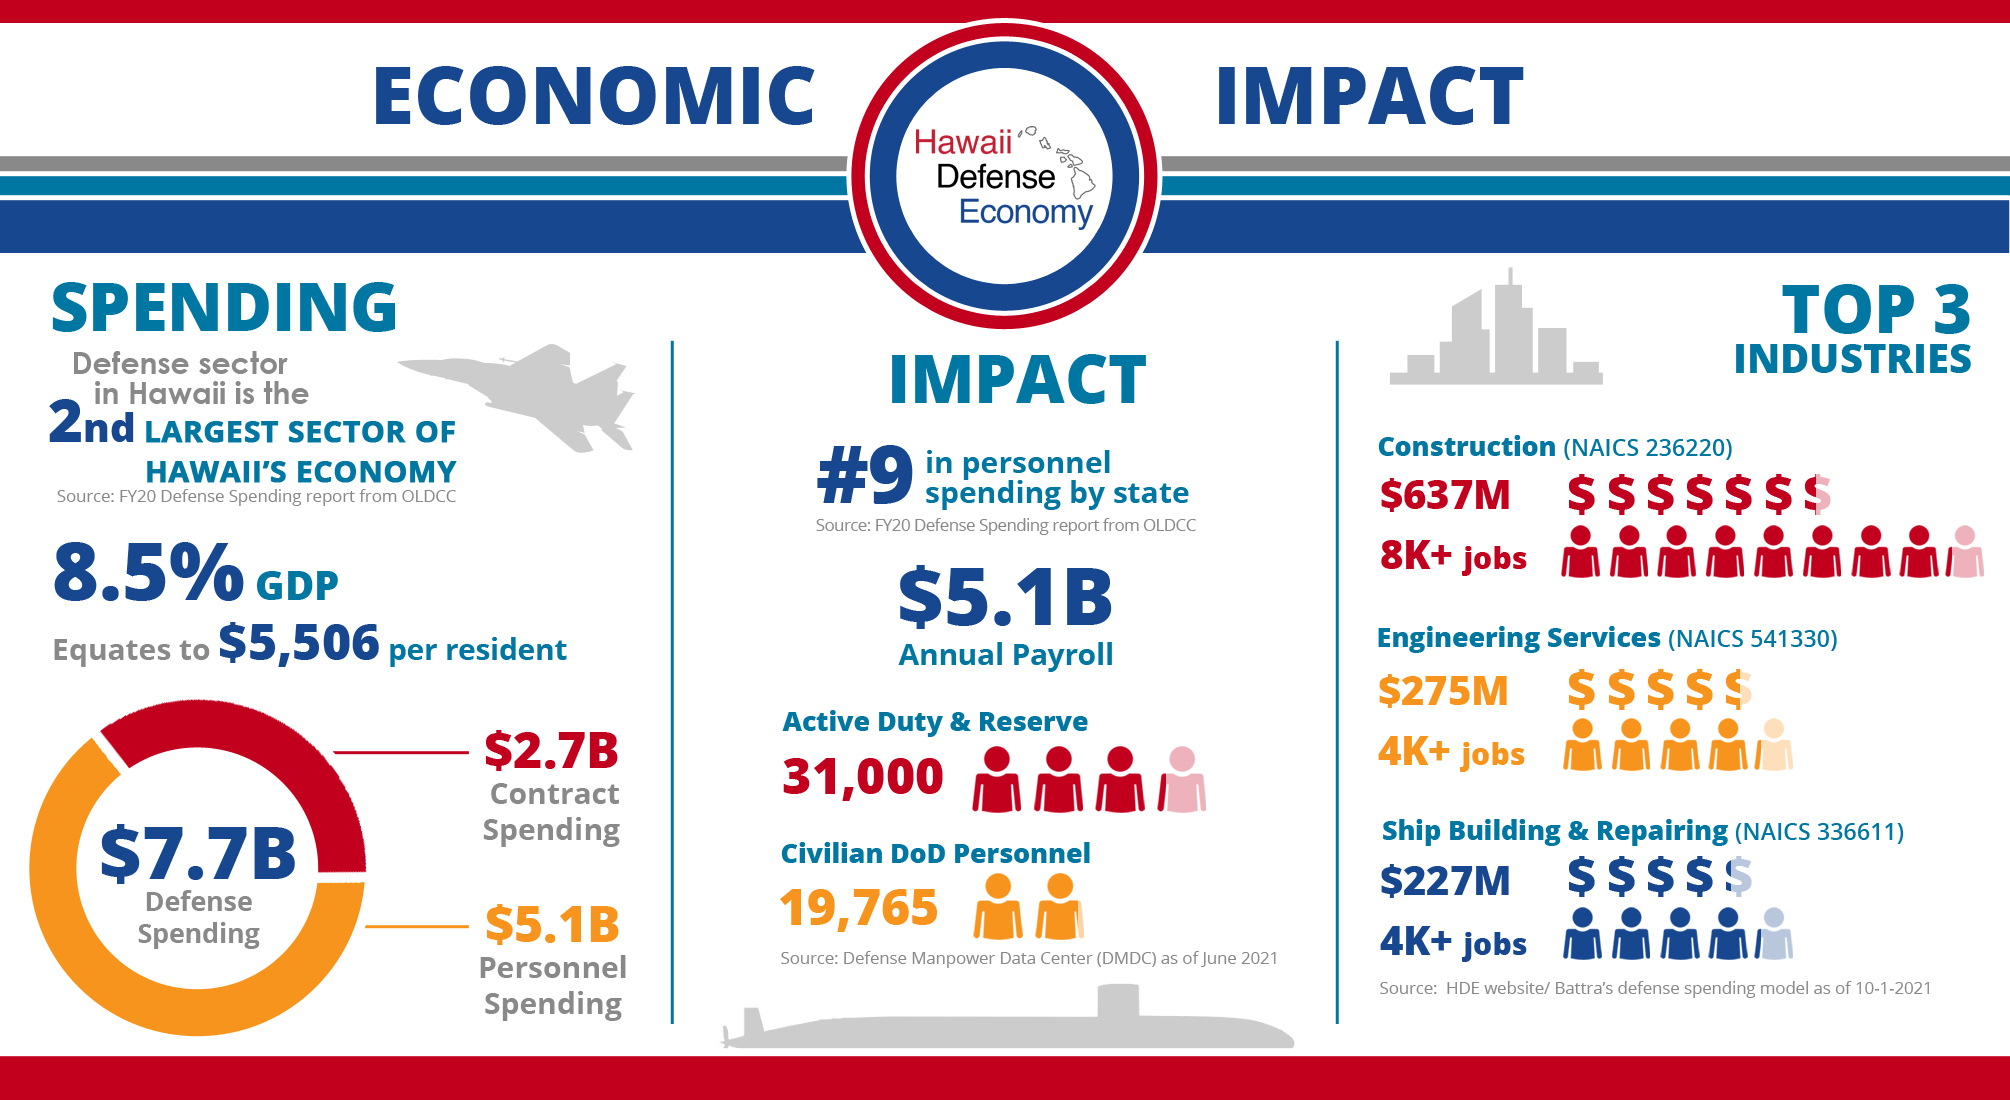 Economic Impact Infographic Hawaii Defense Economy